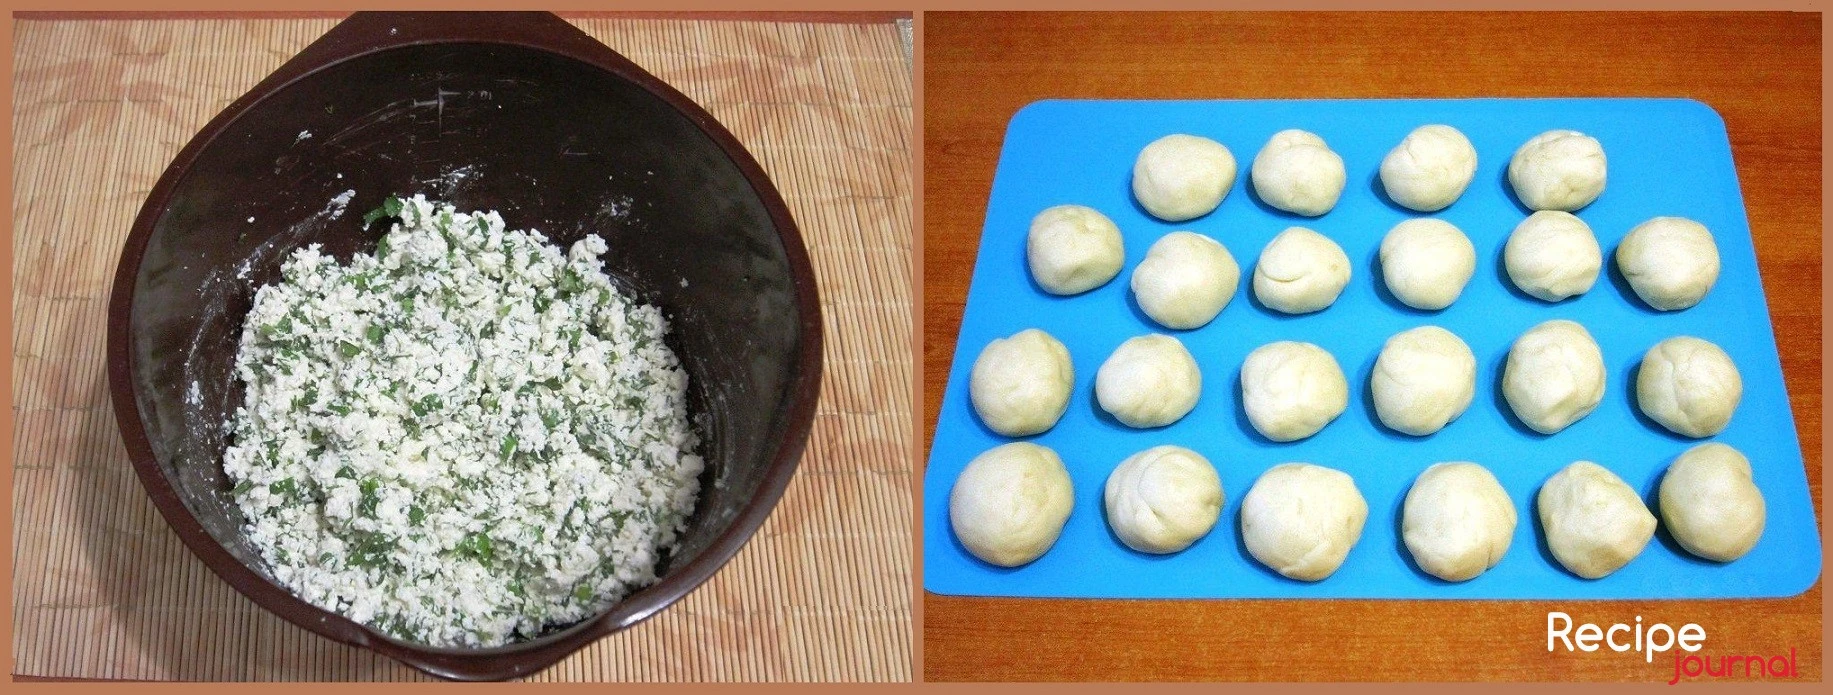 Измельчаем брынзу на терке и добавляем к зелени. Солим по вкусу. Когда тесто увеличится в размере в два раза, обминаем и делаем небольшие, размером с яйцо заготовки для пирожков.